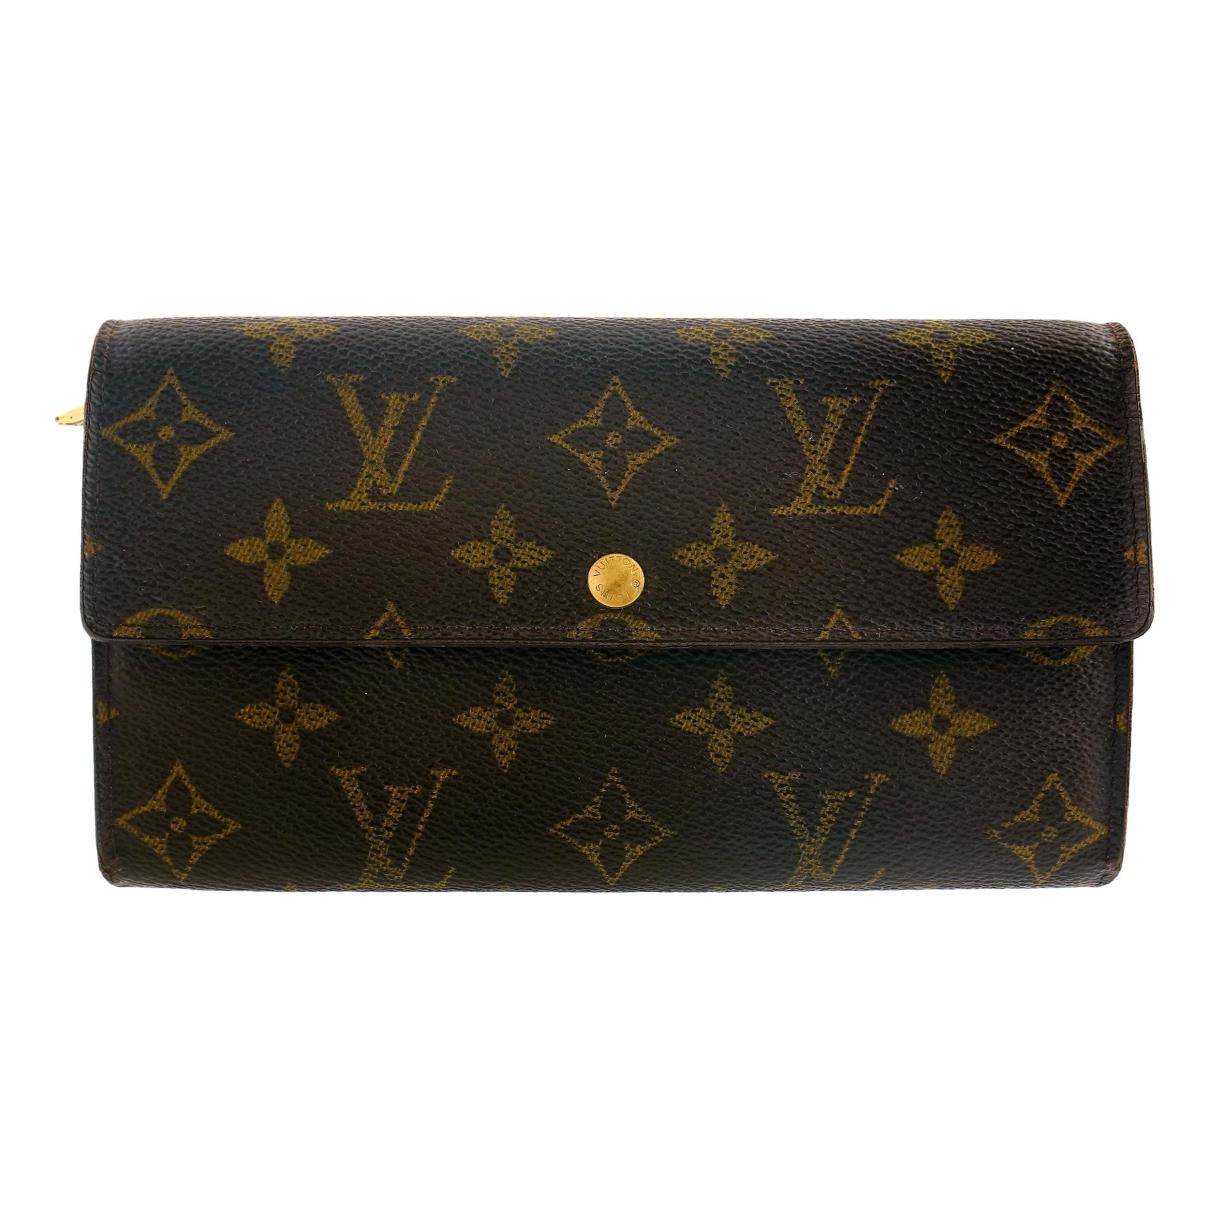 Best Louis Vuitton Wallet For Women  From A Former Louis Vuitton Employee!  